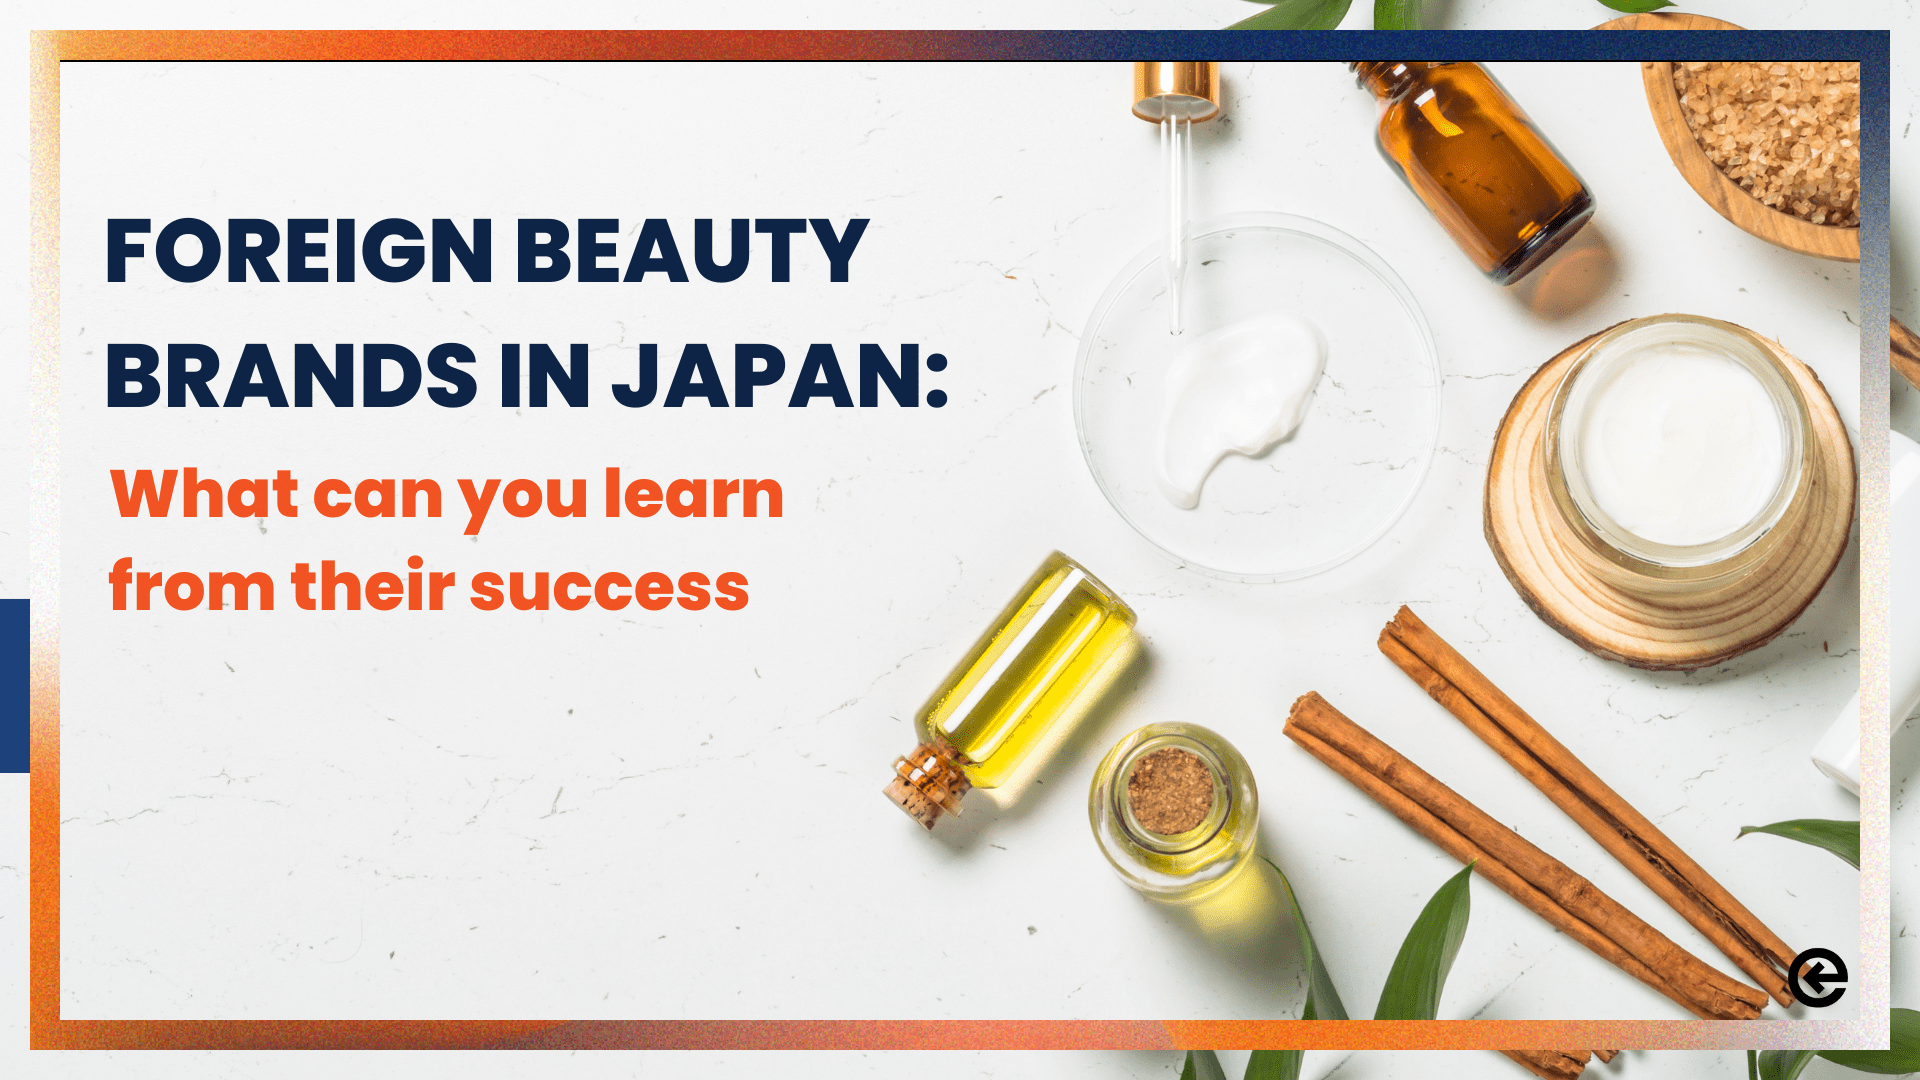 Ausländische Kosmetikmarken in Japan: Was Sie von ihrem Erfolg lernen können 